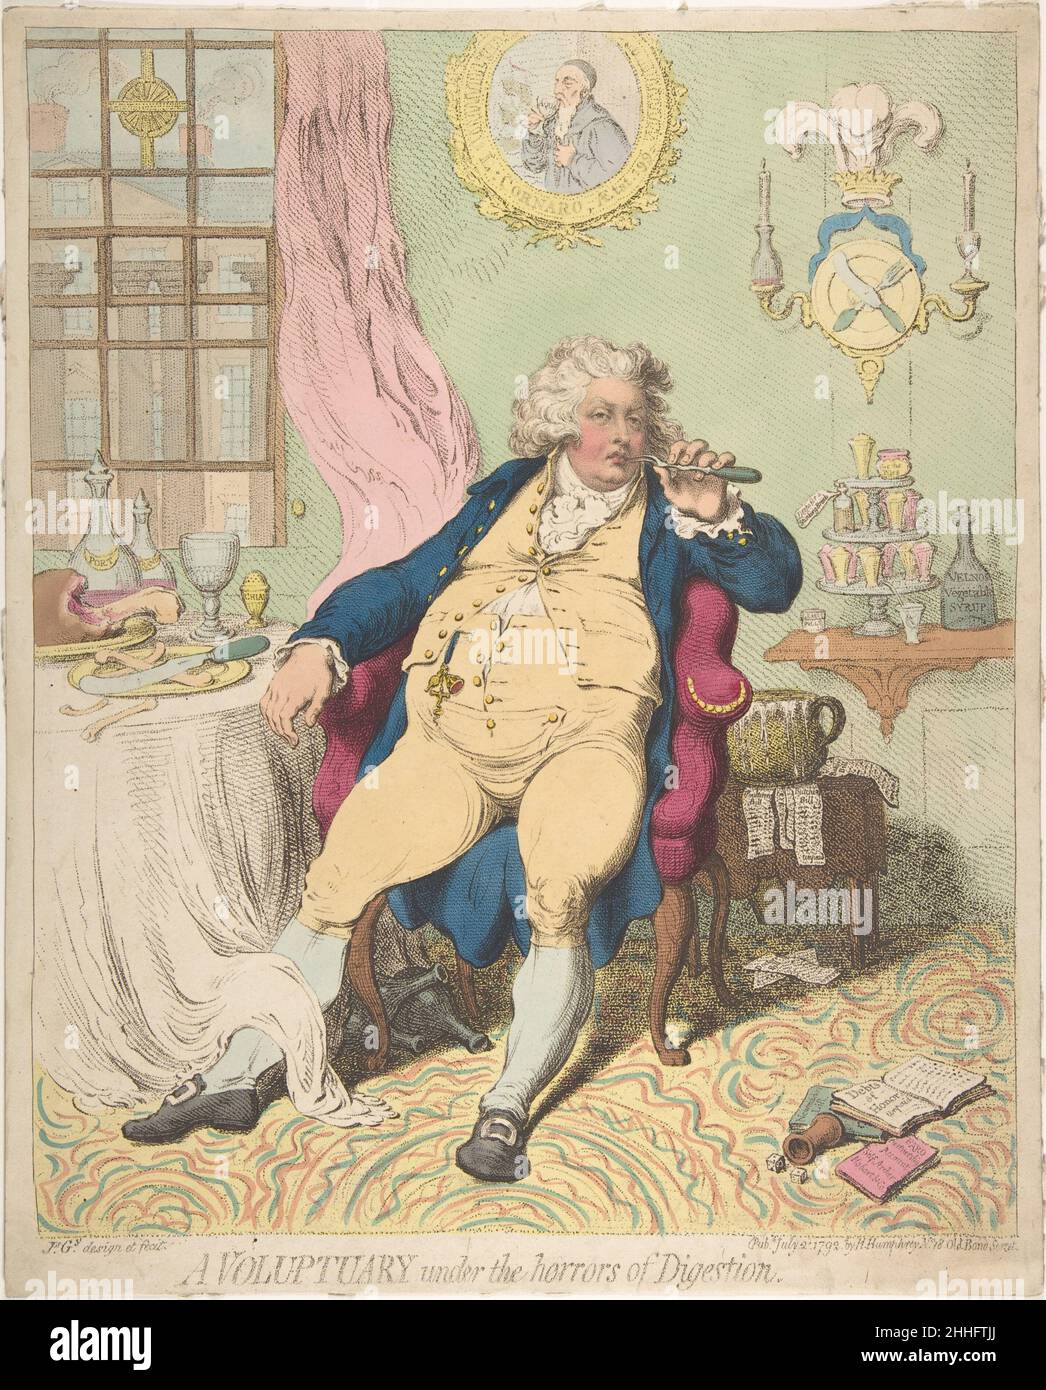 Ein Voluptuary unter den Schrecken der Verdauung 2. Juli 1792 James Gillray die berühmt-berüchtigte brutale Karikatur von George, Prince of Wales, fasst die Auswirkungen unkontrollierter Selbstnachgiebigkeit auf den Thronfolger der Briten zusammen. Nach einem ausgiebigen Mahl in seinem Stuhl ausgestreckt, pflückt der Prinz mit einer Fleischgabel seine Zähne; seine mangelnde Heiterei wird durch den überfließenden Kammertopf an seinem Ellbogen unterstrichen, der zur Verankerung unbezahlter Rechnungen verwendet wurde. Seine angesammelten Krankheiten, die erst dreißig Jahre alt sind, lassen sich aus rechts angehäuften Heilmitteln ableiten – Pillen und Tränke zur Behandlung von „streichelndem Atem“, „Haufen“ (Hämorrhoiden), Stockfoto